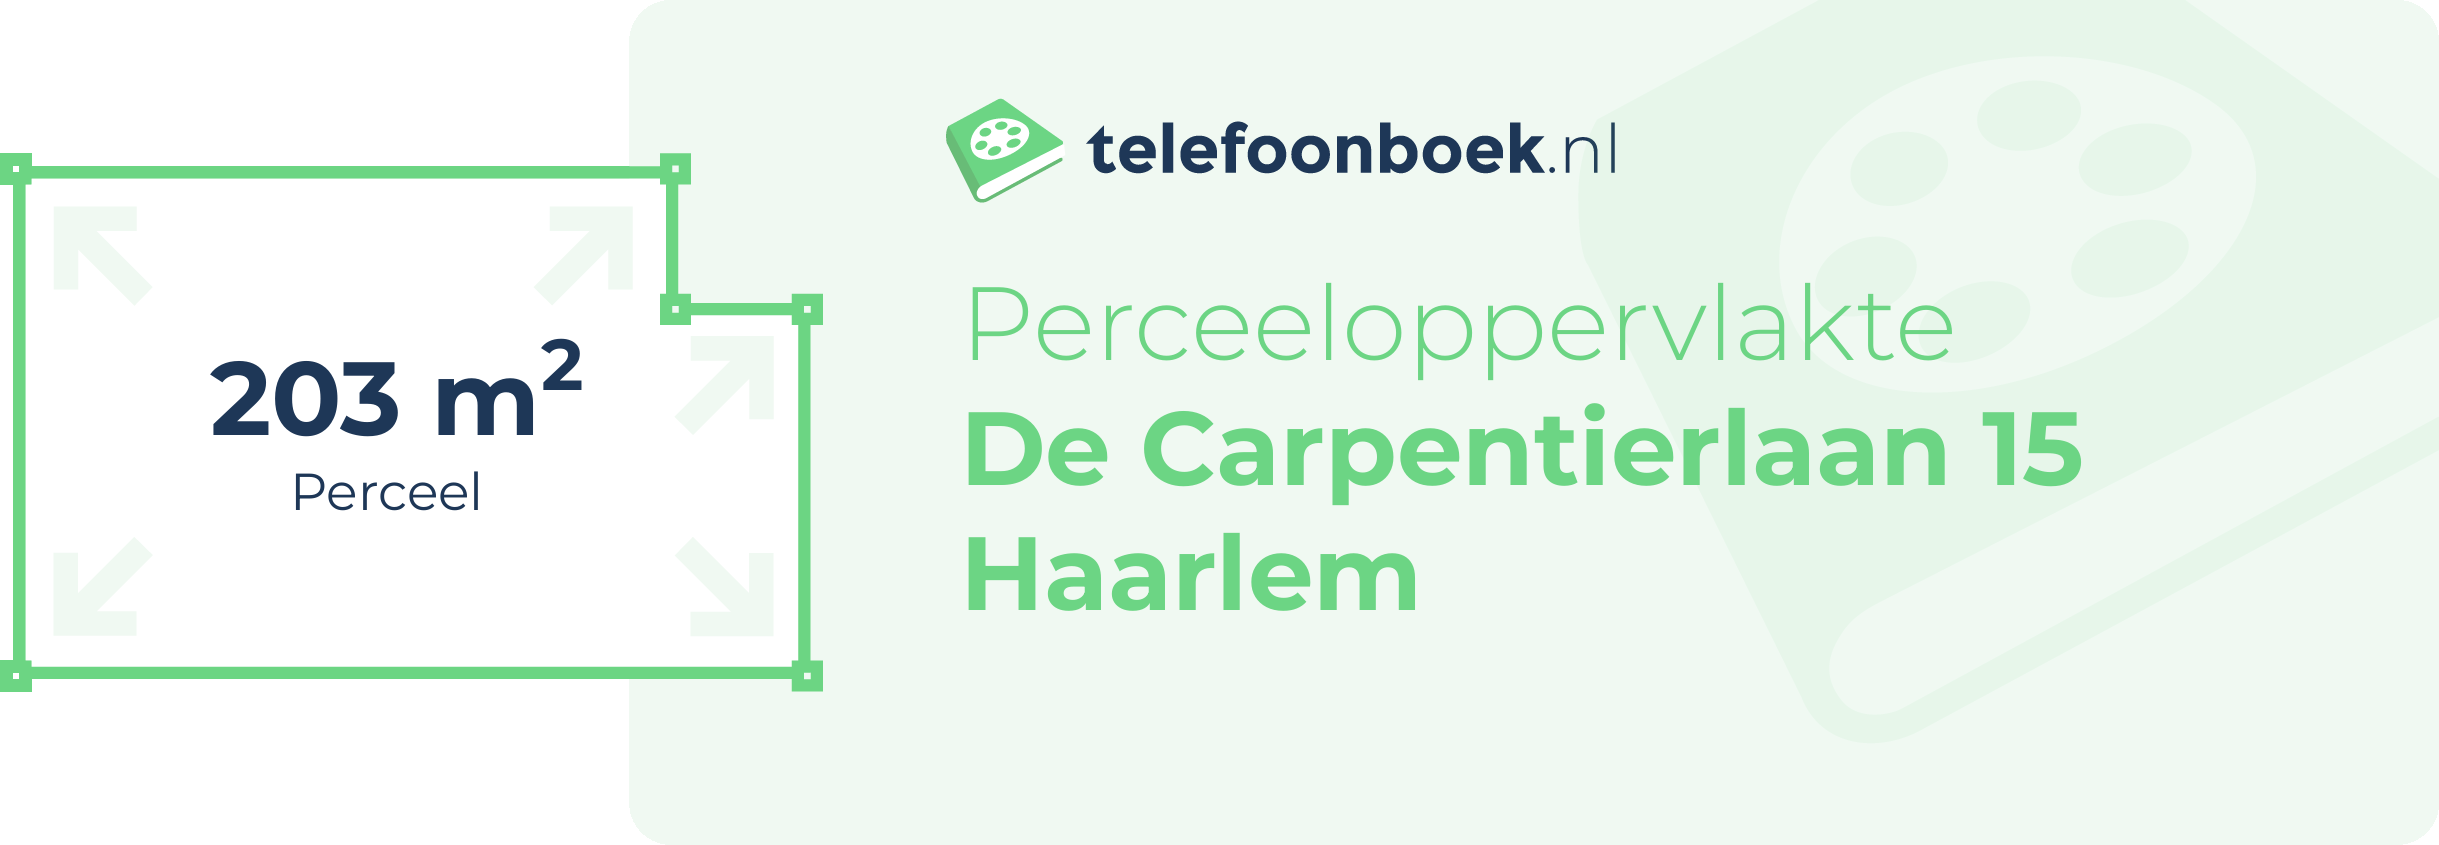 Perceeloppervlakte De Carpentierlaan 15 Haarlem